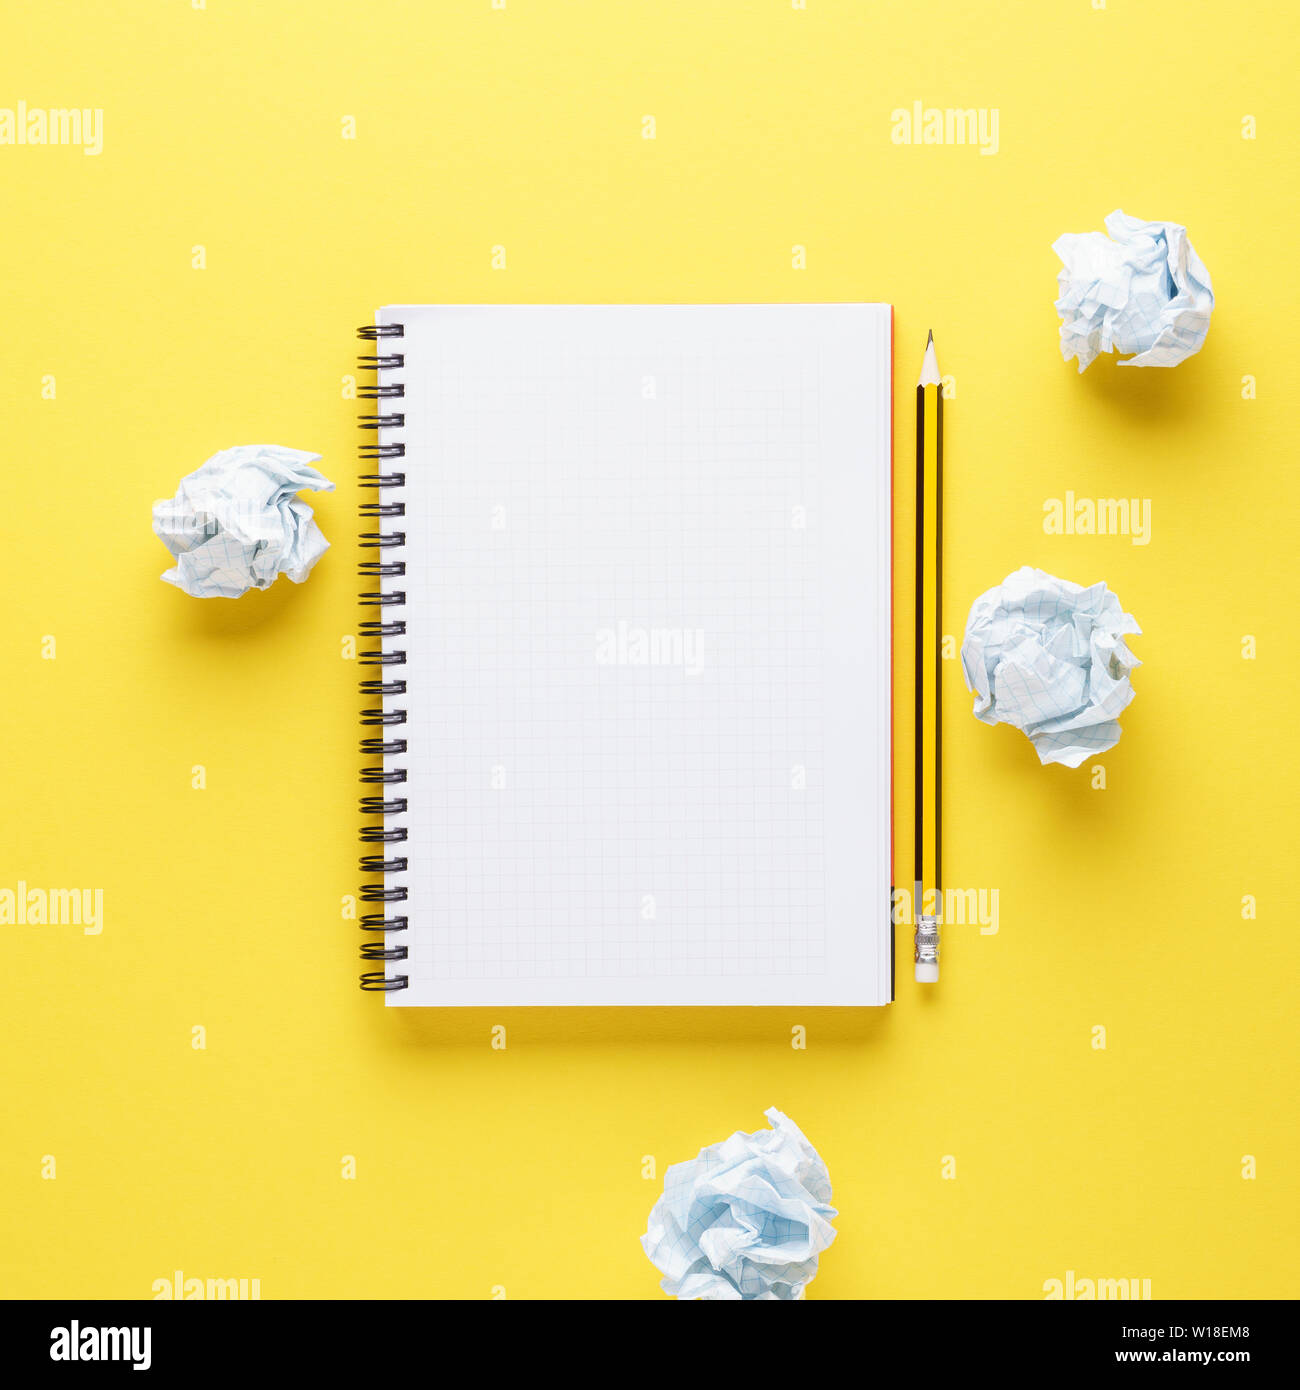 Leer notebook, Bleistift Öffnen und zerknittertes Papier auf gelben Hintergrund. Erstellung oder kreative Versuche Konzept. Kopieren Sie Platz. Stockfoto